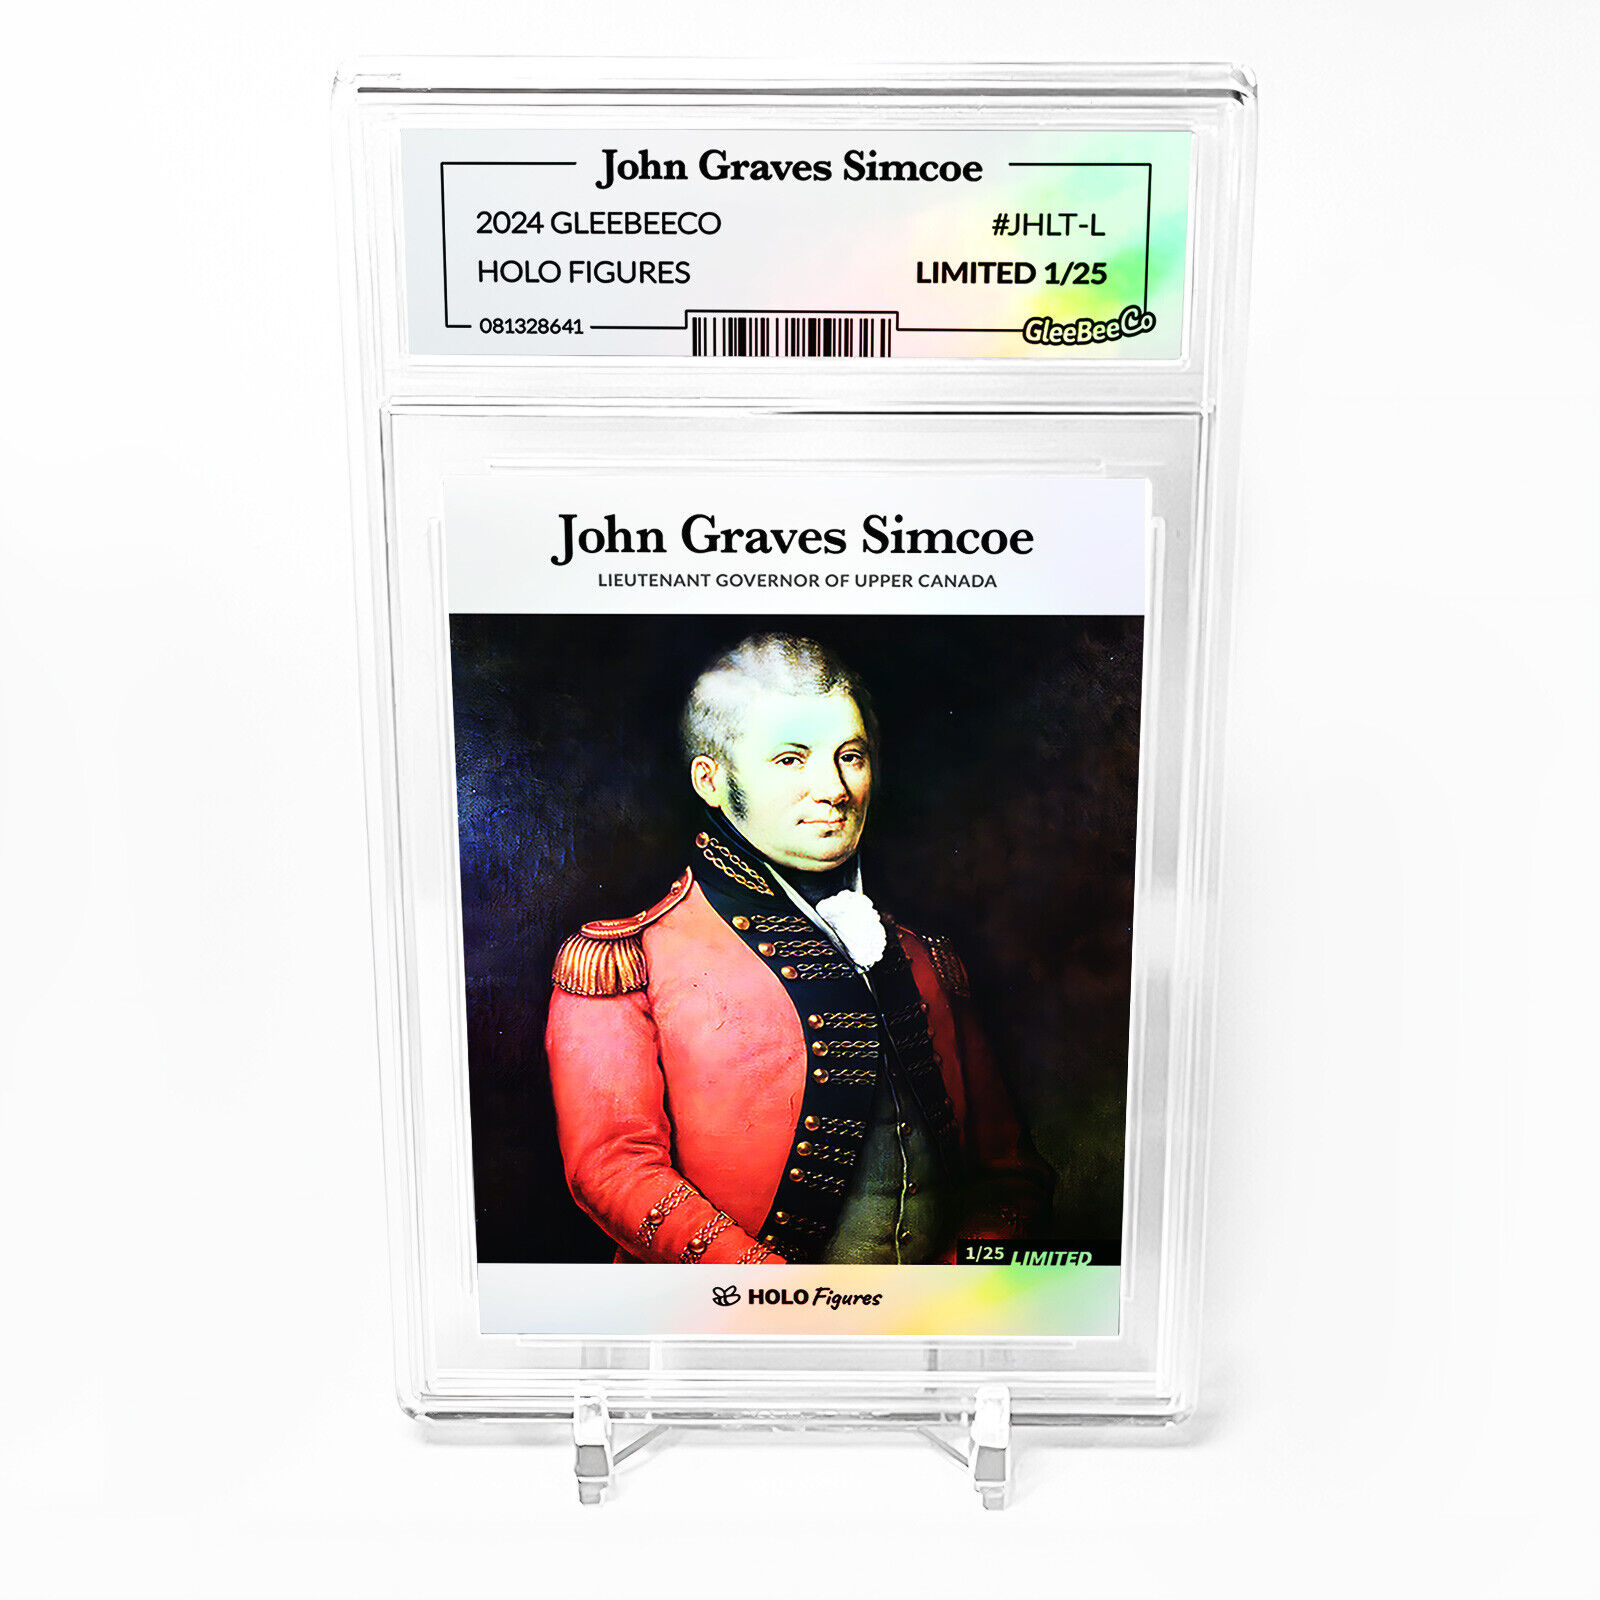 JOHN GRAVES SIMCOE Art Card 2024 GleeBeeCo Holo Figures Slabbed #JHLT-L /25